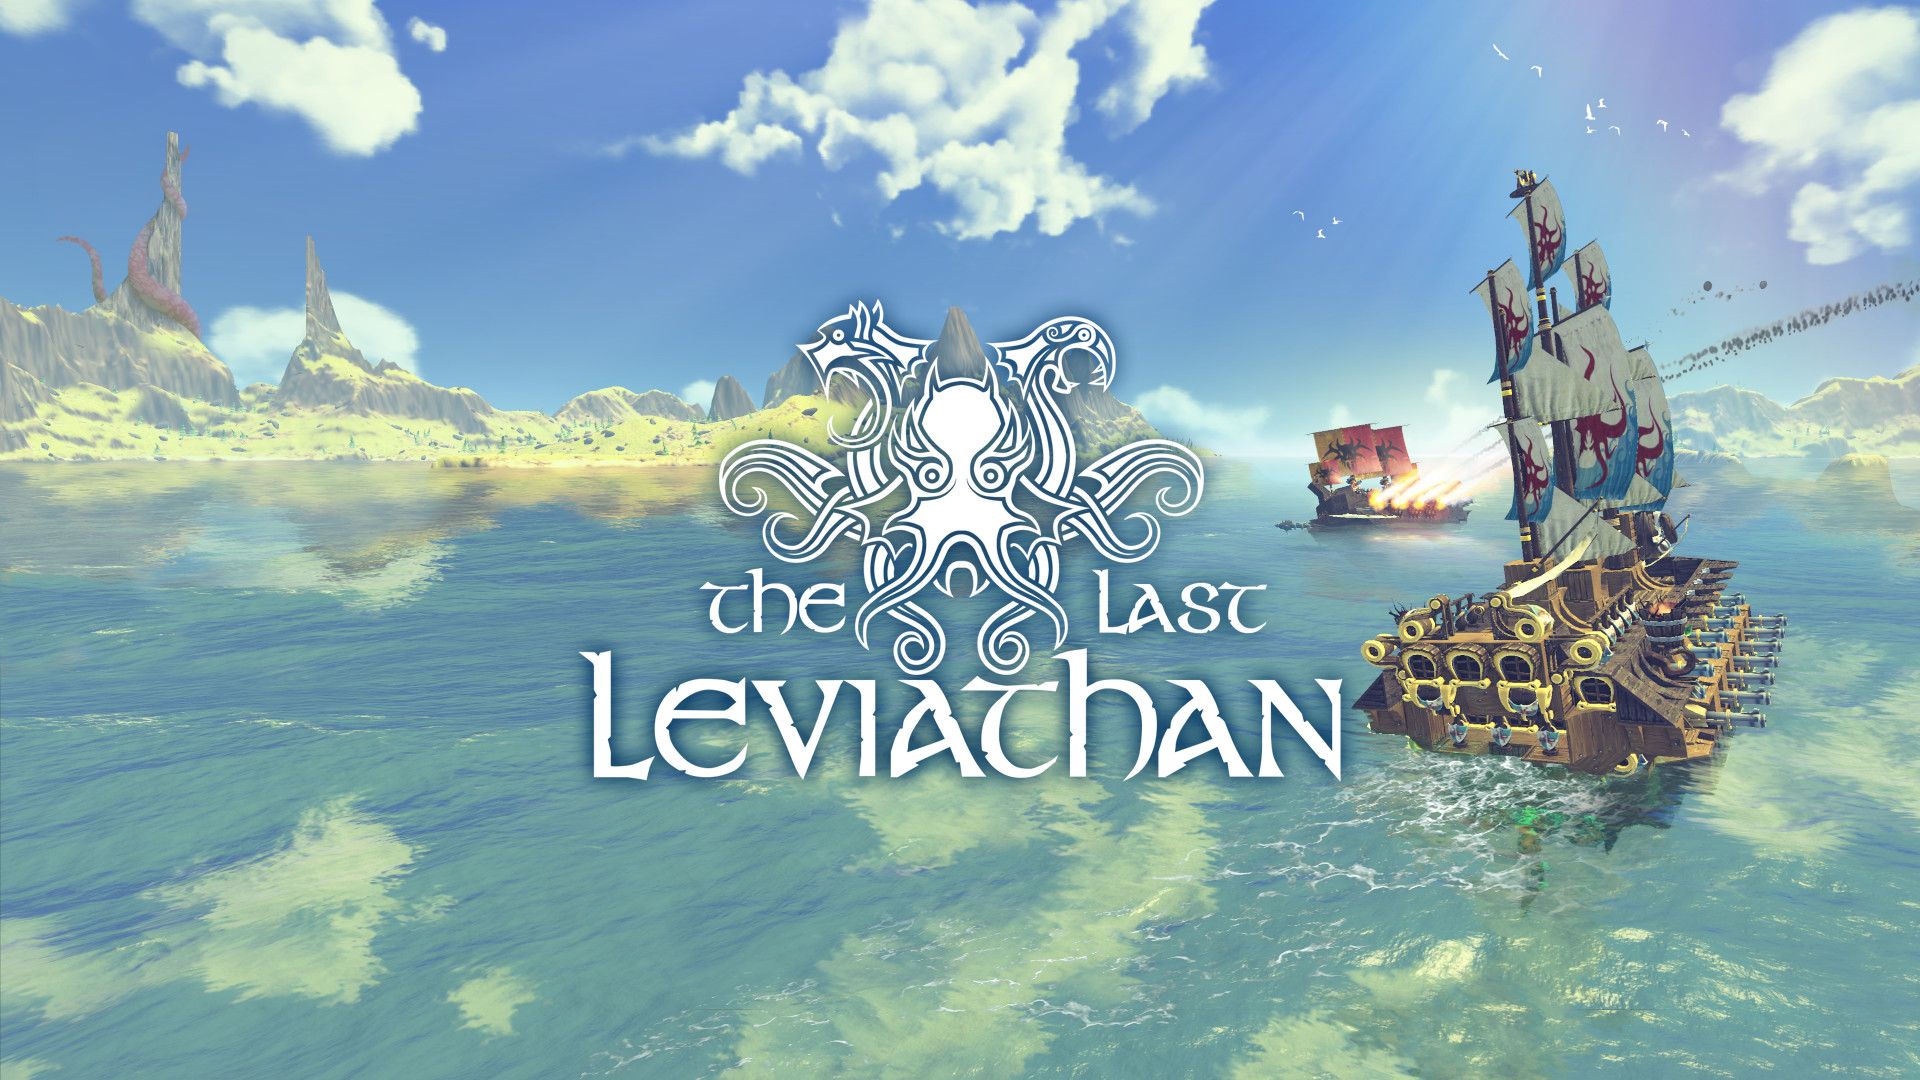 The Last Leviathan wird bald aus dem Verkauf genommen